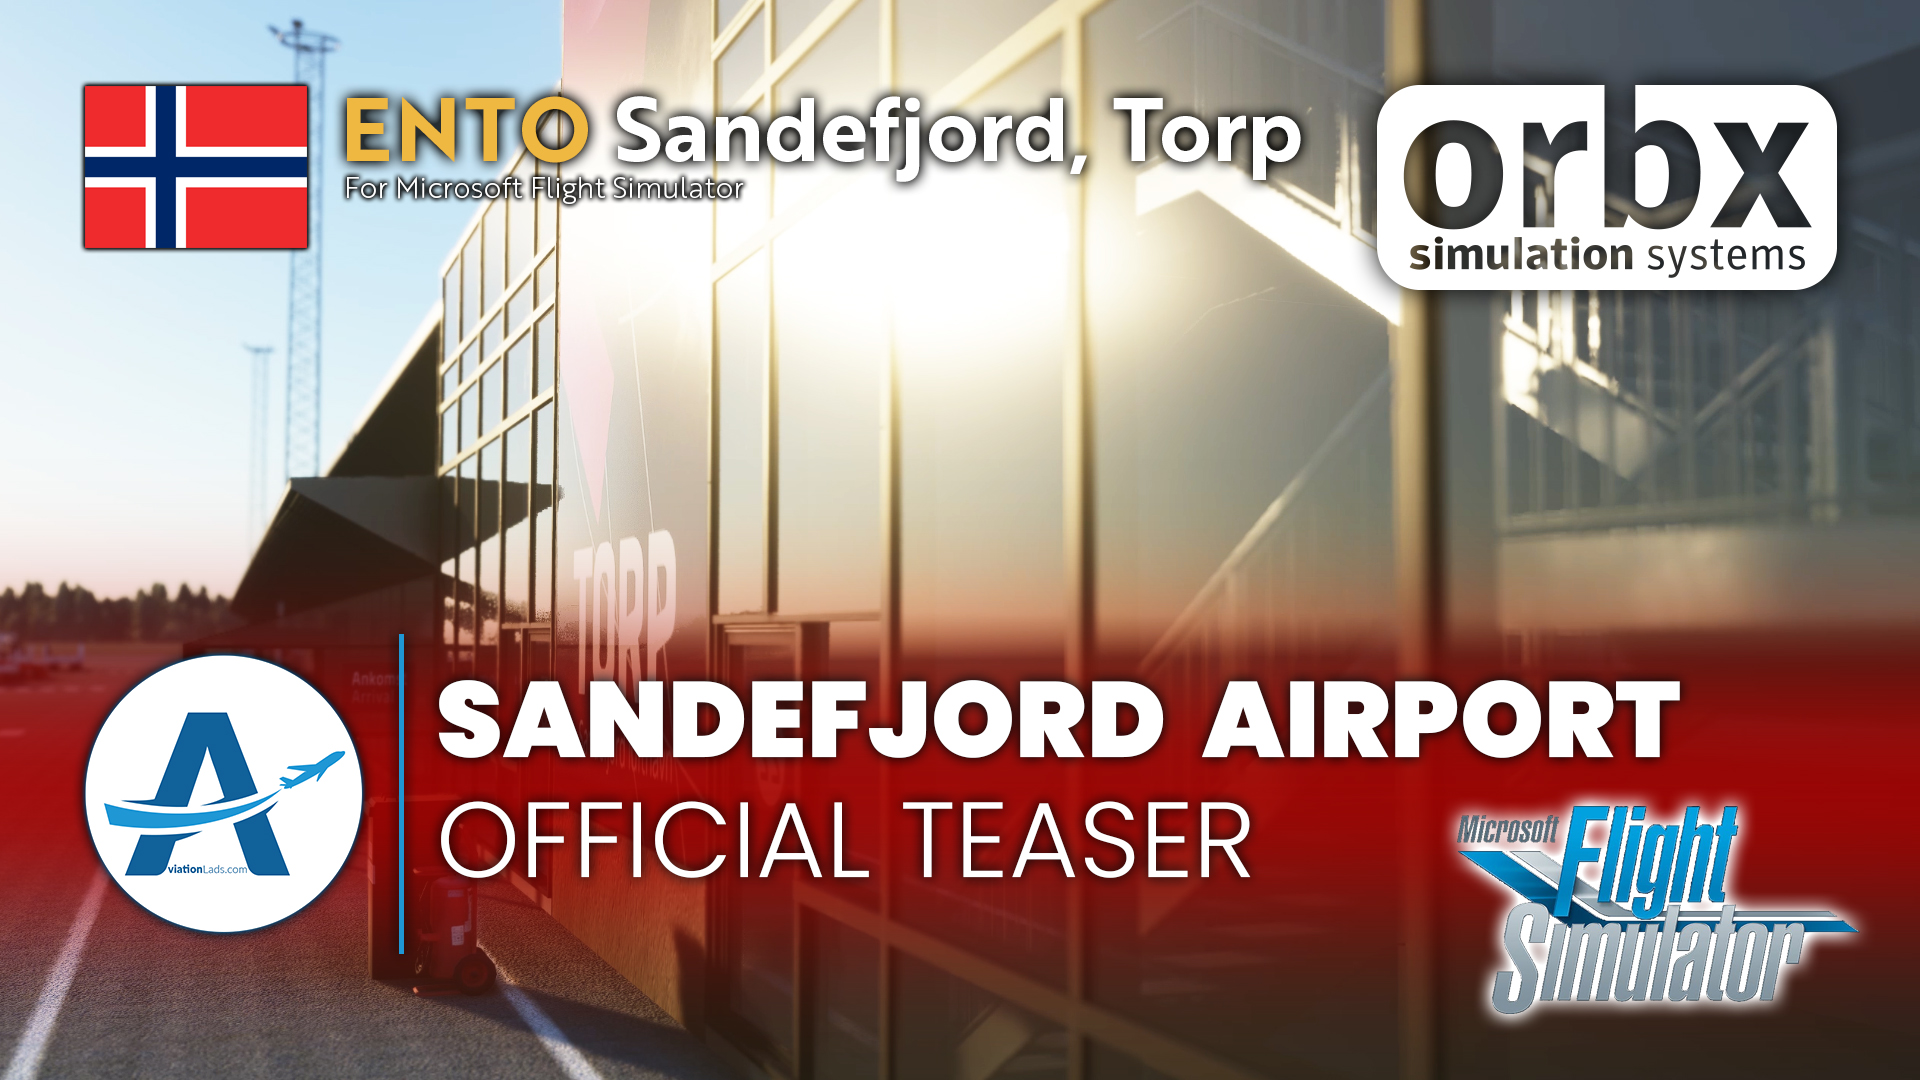 [TEASER] Orbx Sandefjord Airport